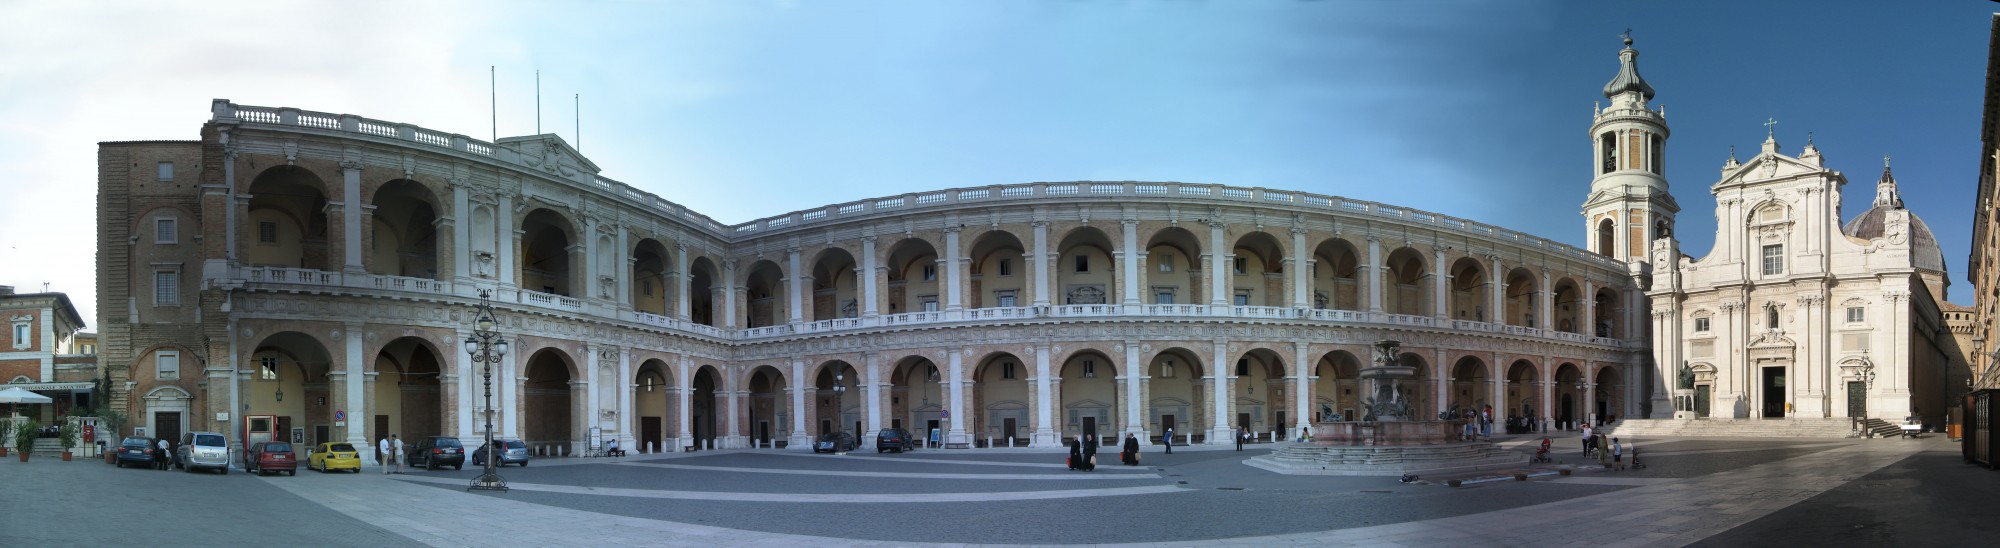 Cattedrale Loreto square panorama